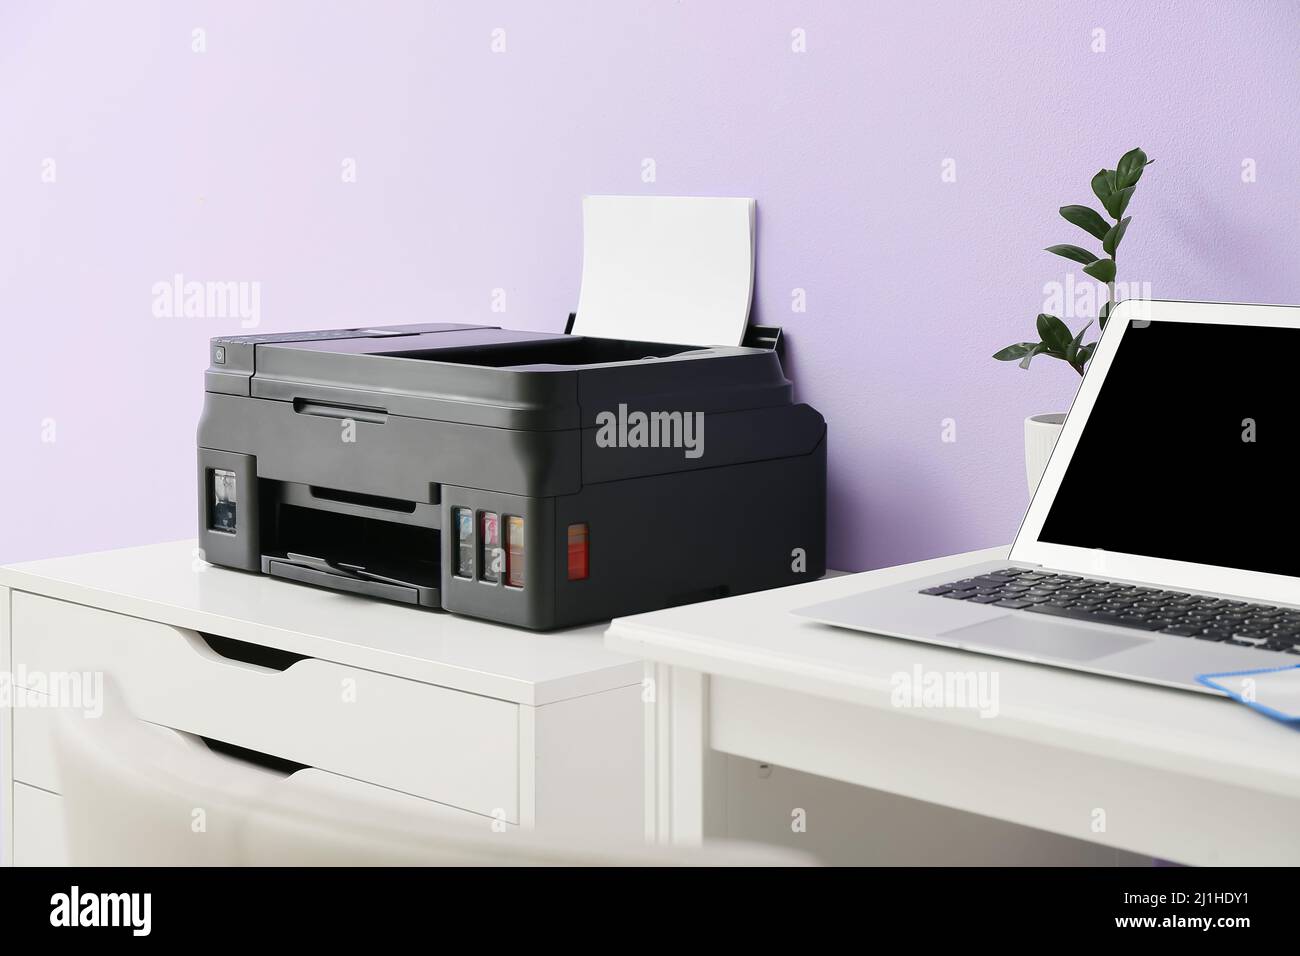 mit modernem Laptop und Kommode Drucker in der Nähe der Farbwand Stockfotografie - Alamy